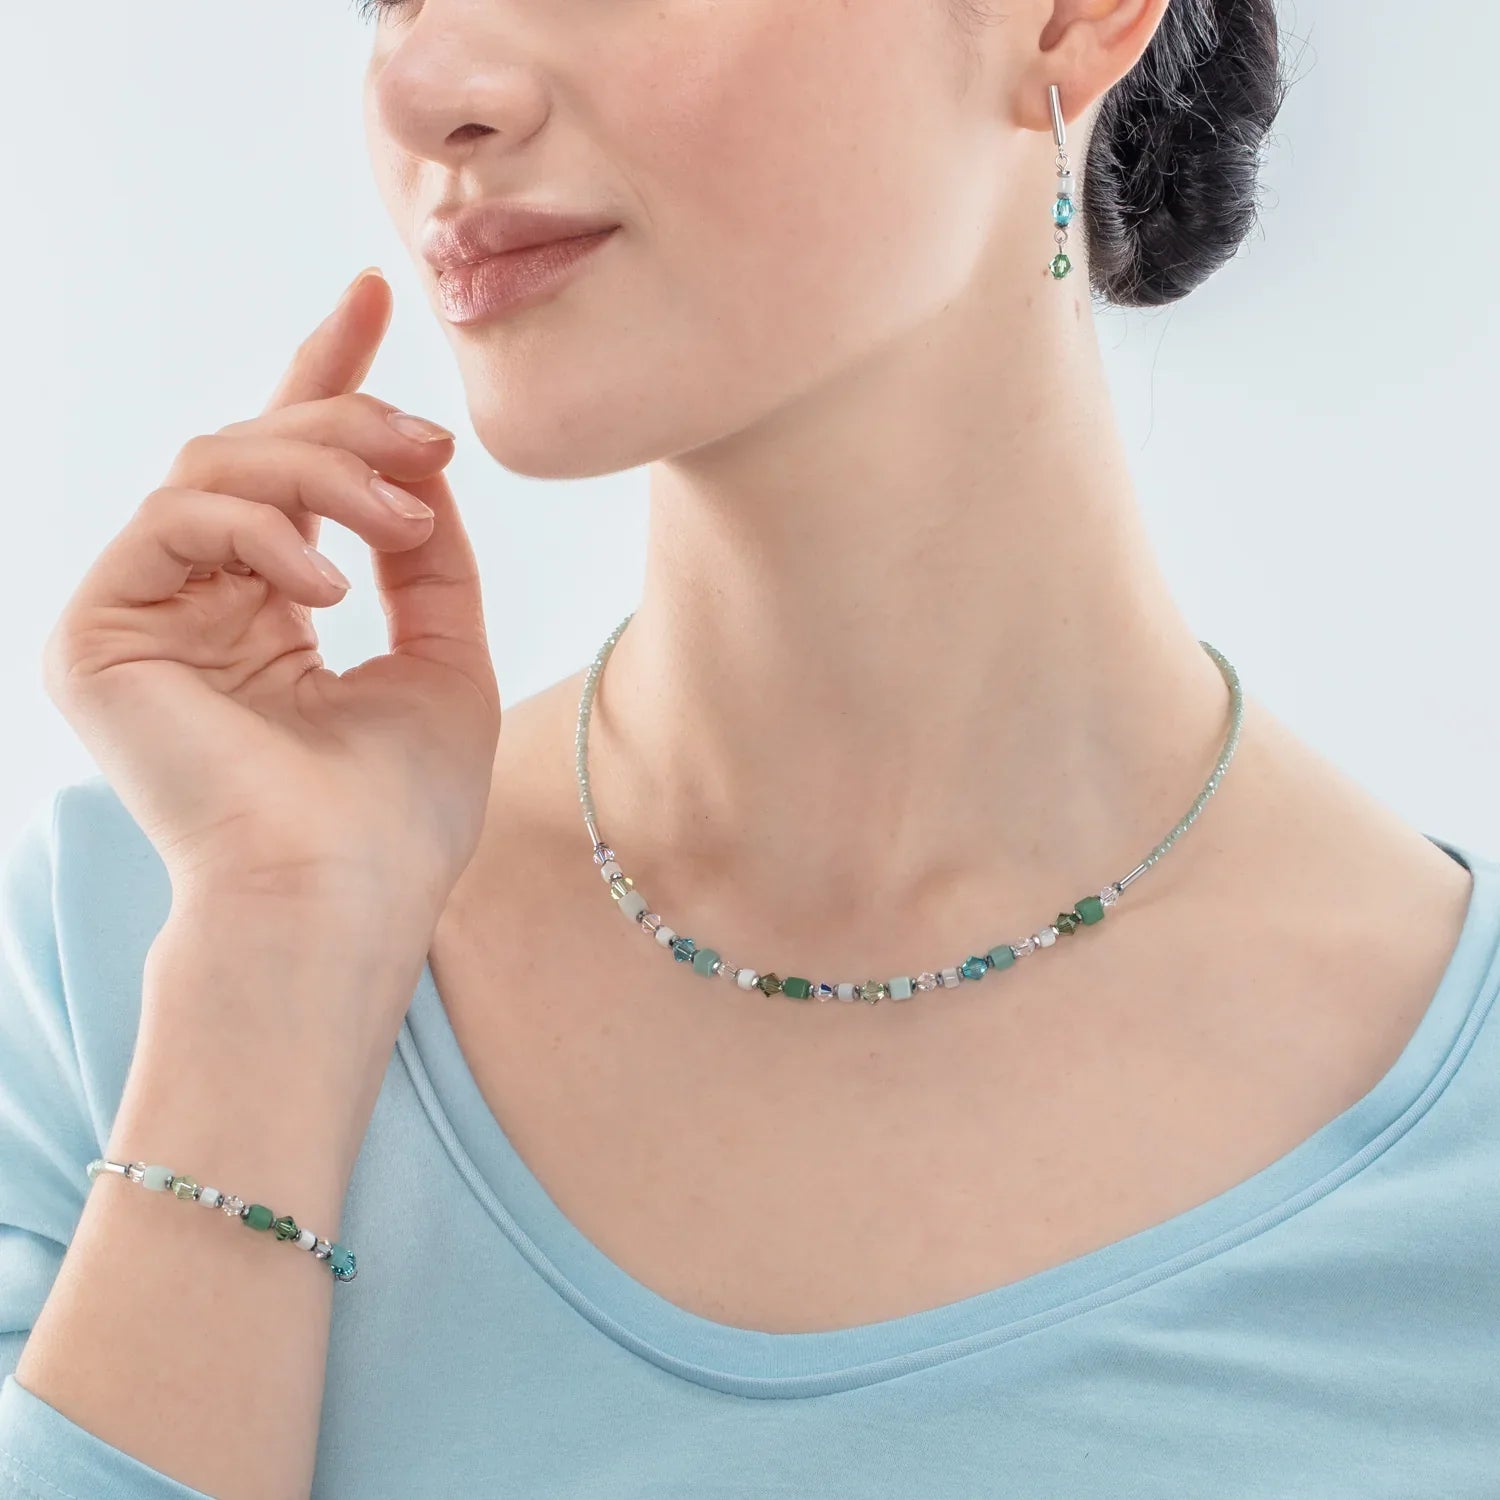 Shimmering Turquoise, Green, White & Silver Bracelet 4239/30_0522